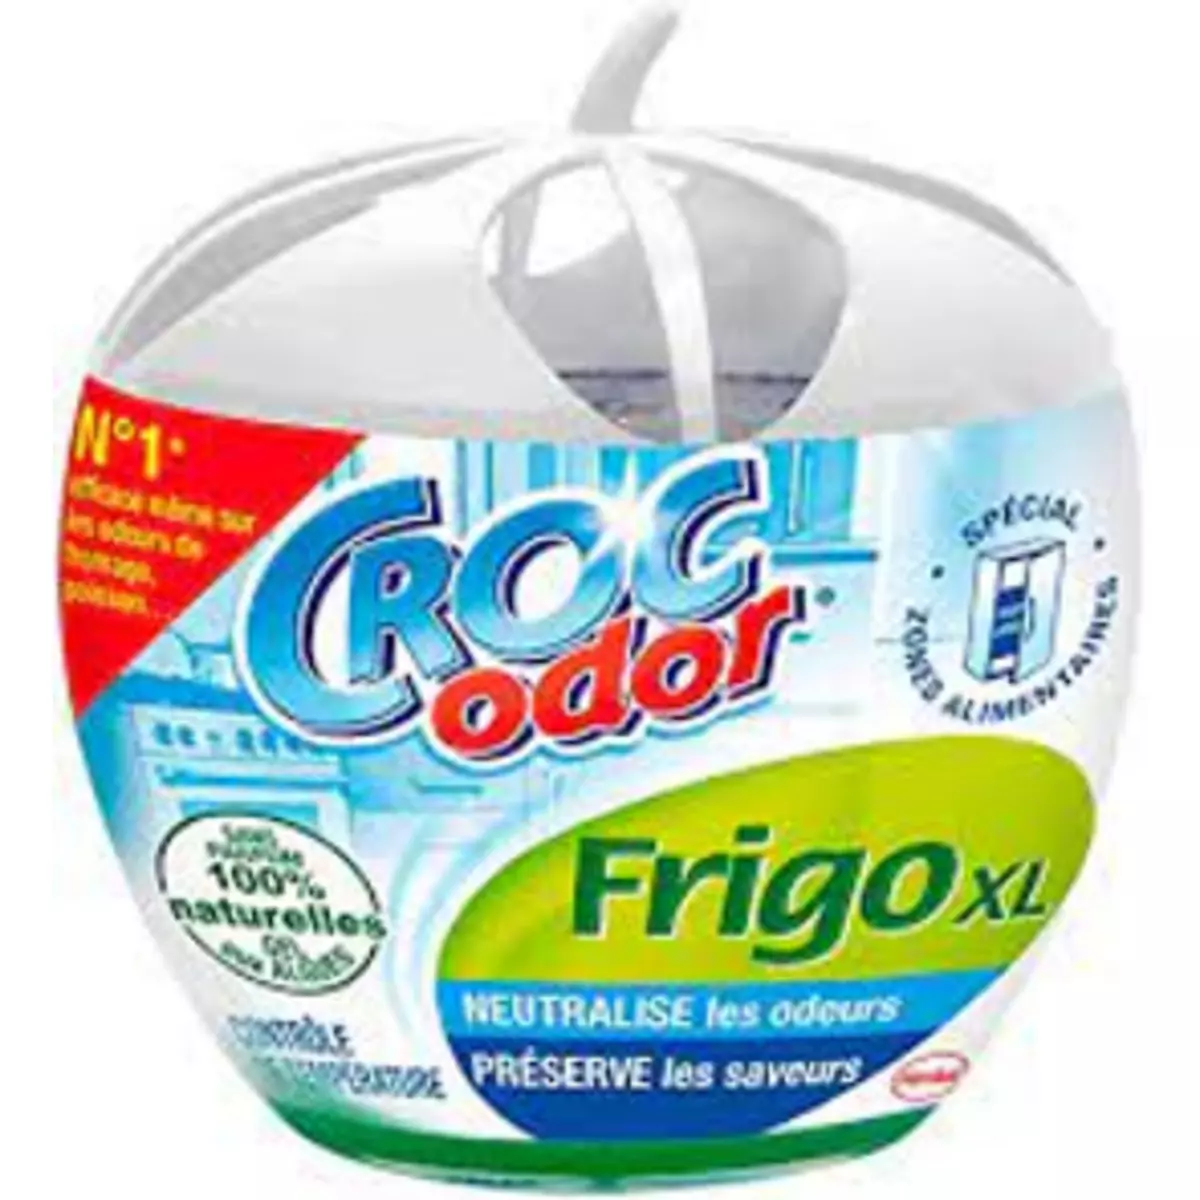 CROC ODOR Désodorisant frigo XL gel aux algues naturelles sans parfum 1 désodorisant 140g